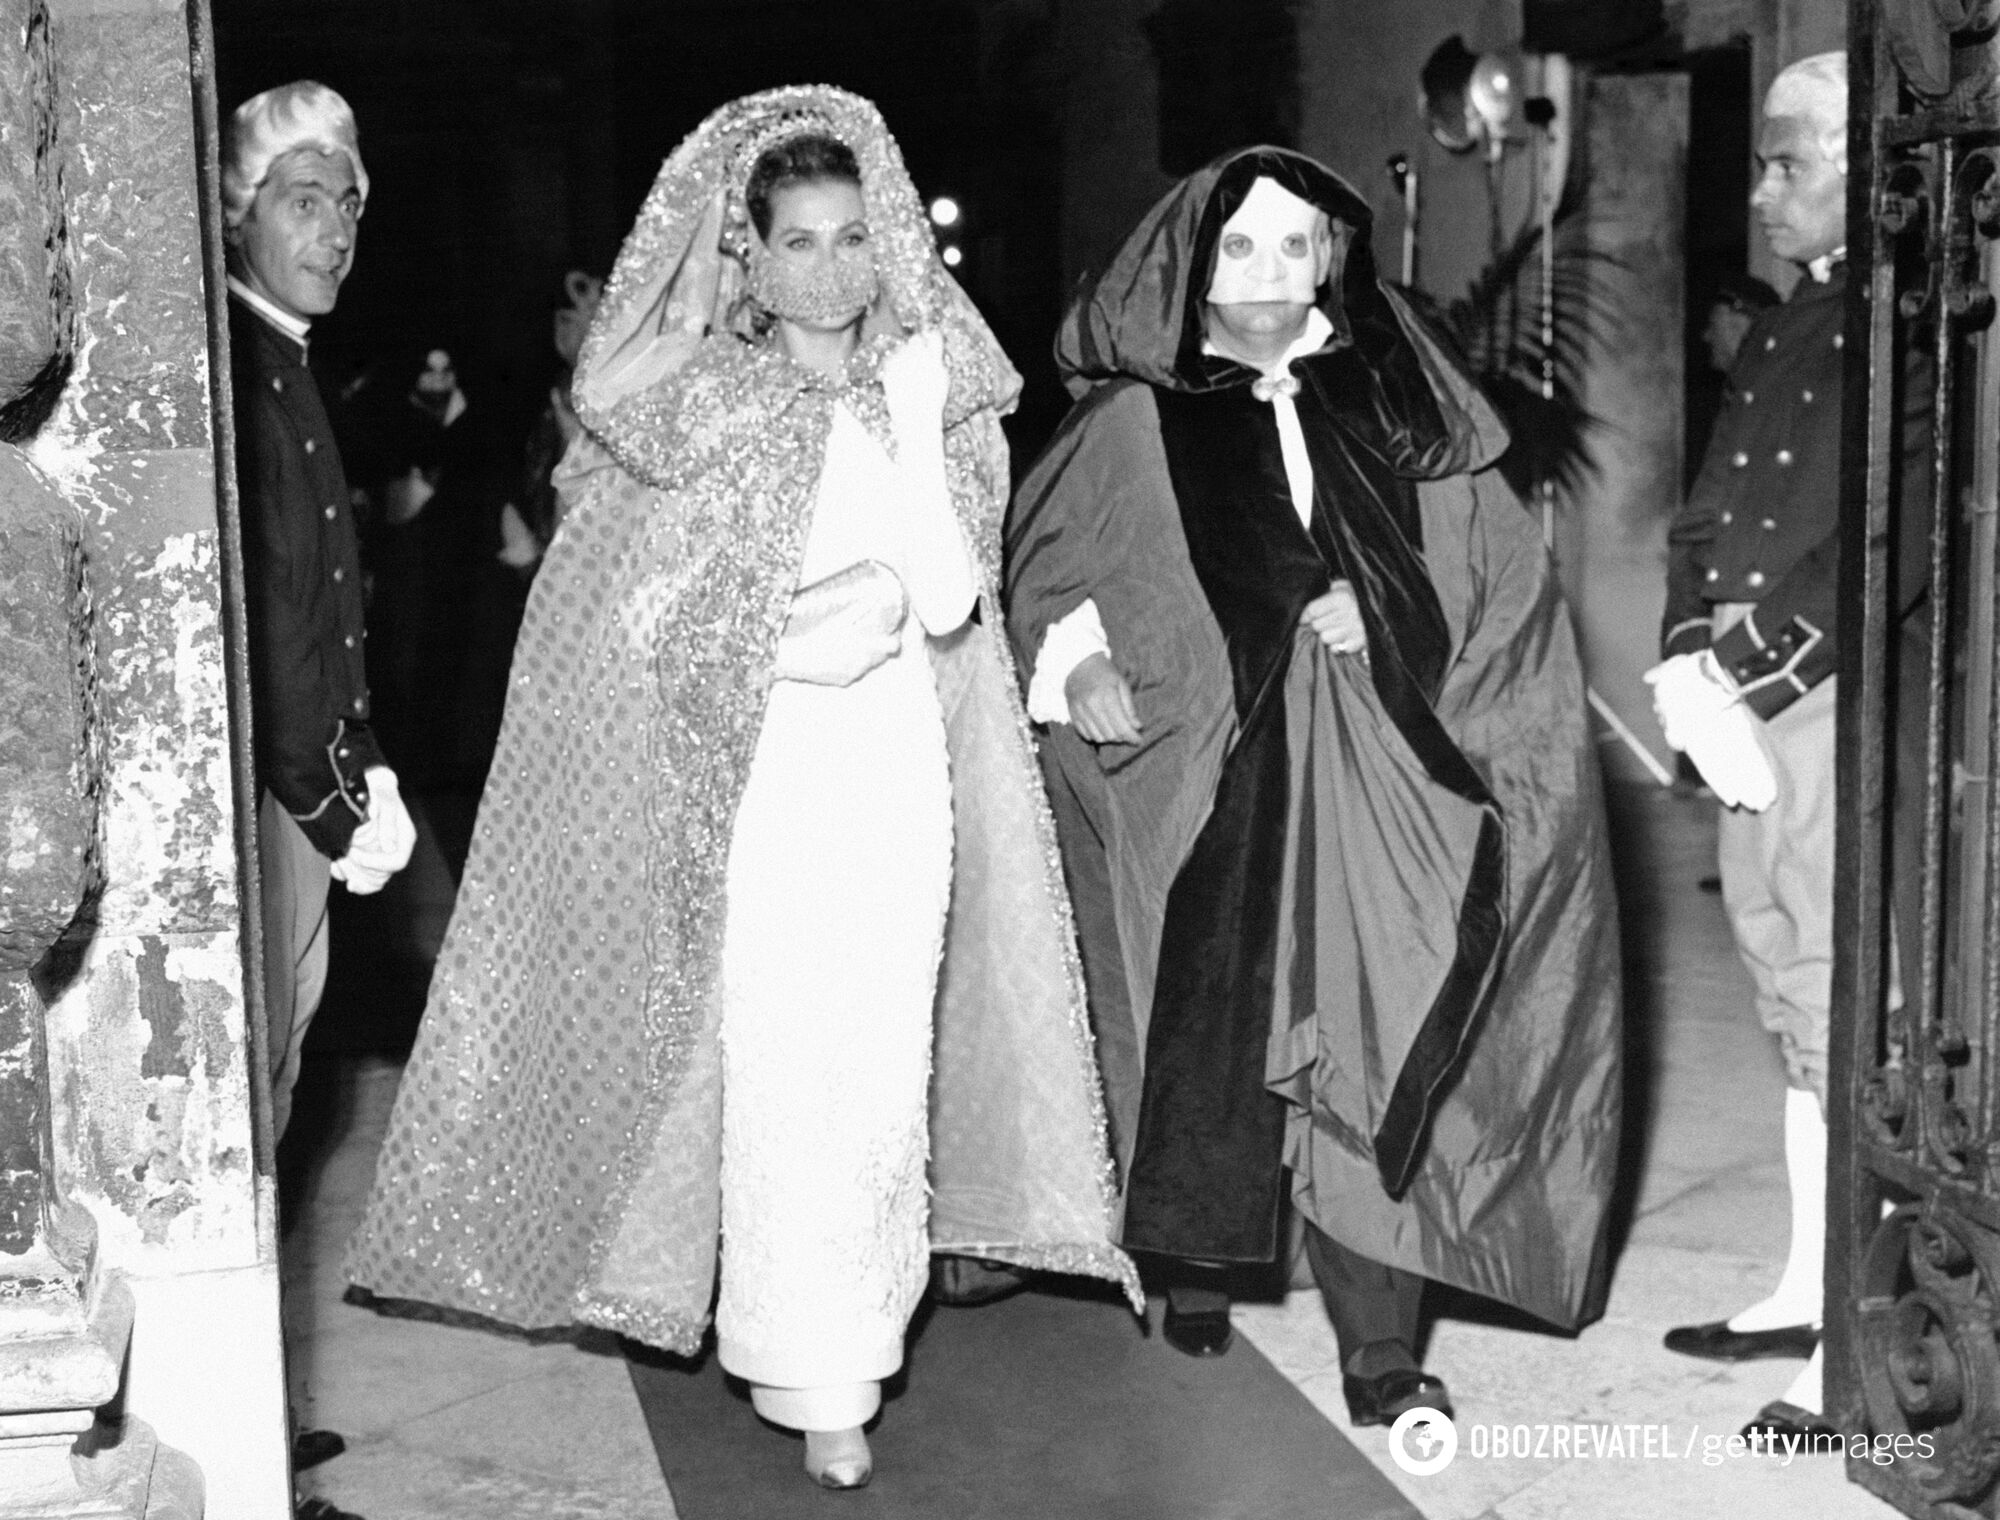 Кейт Міддлтон в образі вампіра, а принцеса Беатріс у костюмі кота. 15 фото членів королівської родини, які вас здивують